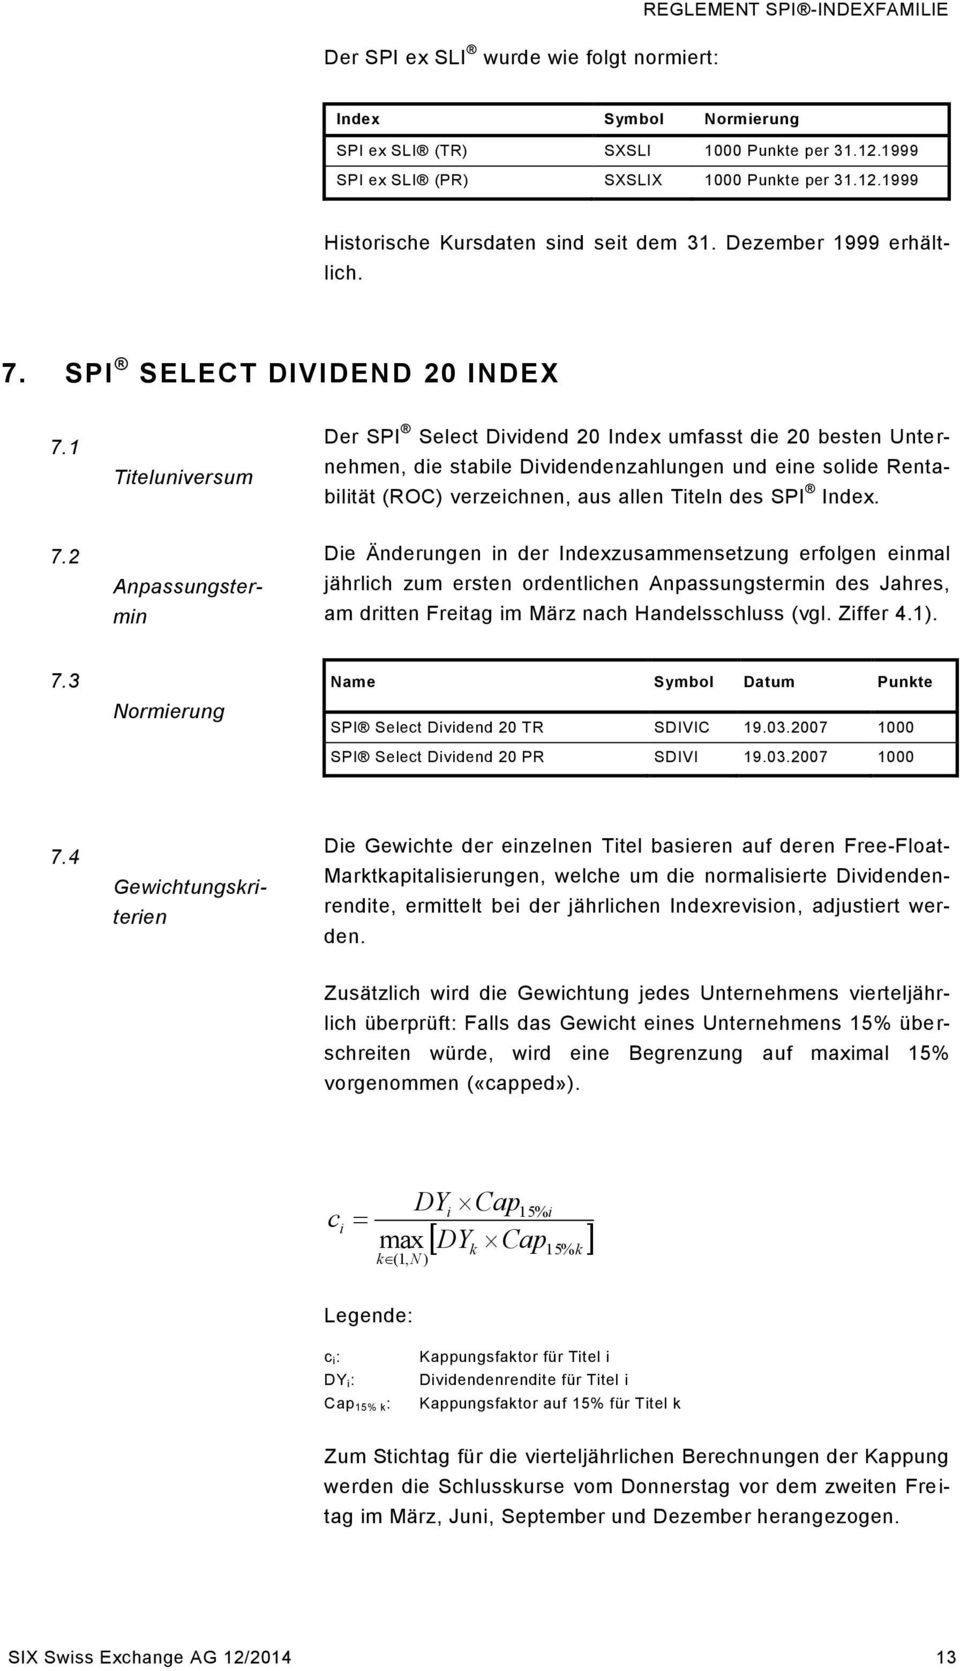 1 Titeluniversum Der SPI Select Dividend 20 Index umfasst die 20 besten Unternehmen, die stabile Dividendenzahlungen und eine solide Rentabilität (ROC) verzeichnen, aus allen Titeln des SPI Index. 7.